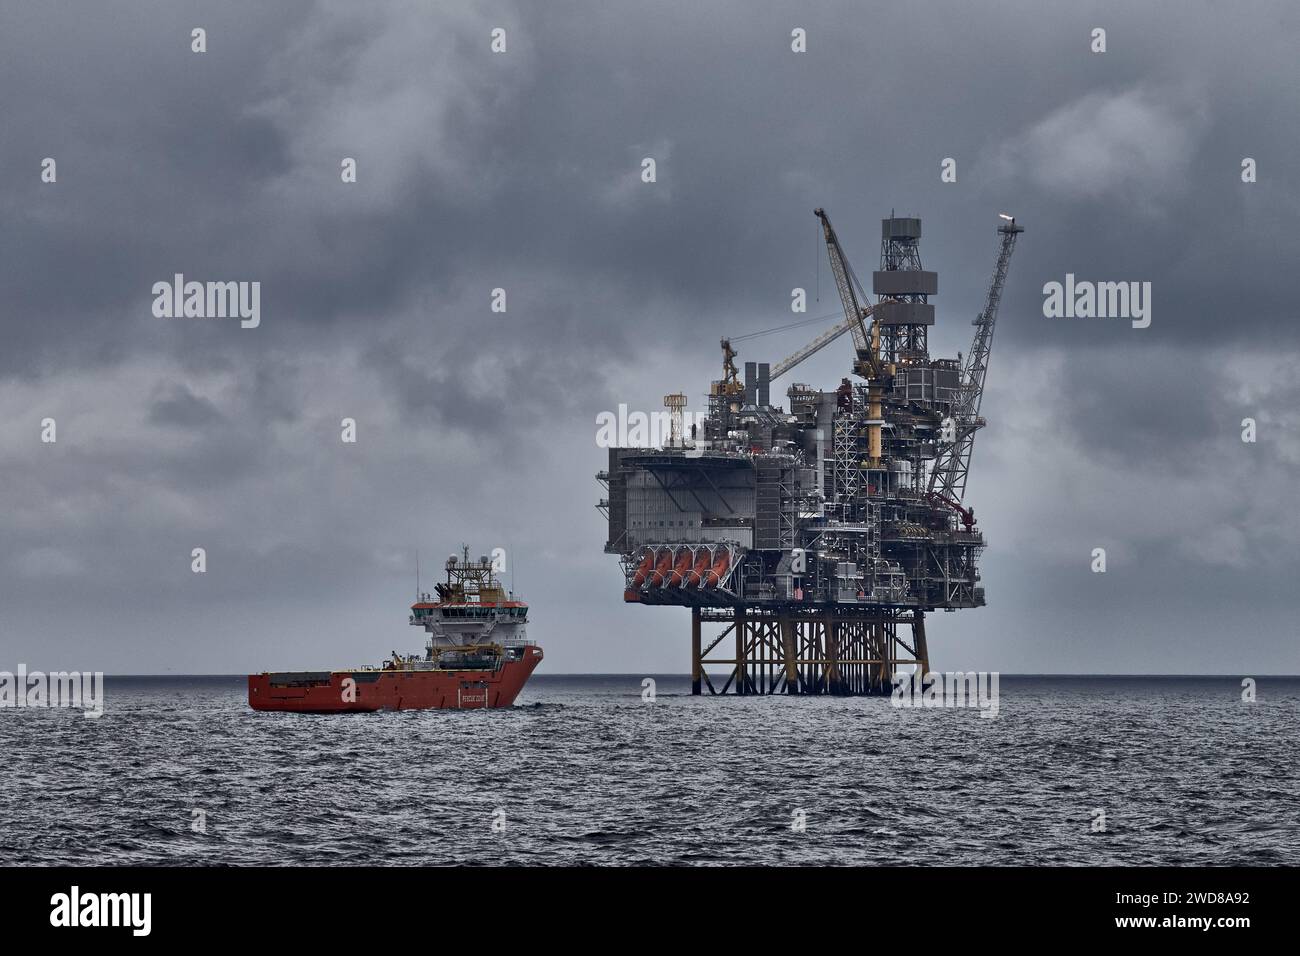 Panoramablick auf die Jack Up Bohranlage und das Versorgungsschiff an einem dunklen bewölkten Tag im Meer. Erdöl- und Erdgasindustrie in der Nordsee. Stockfoto